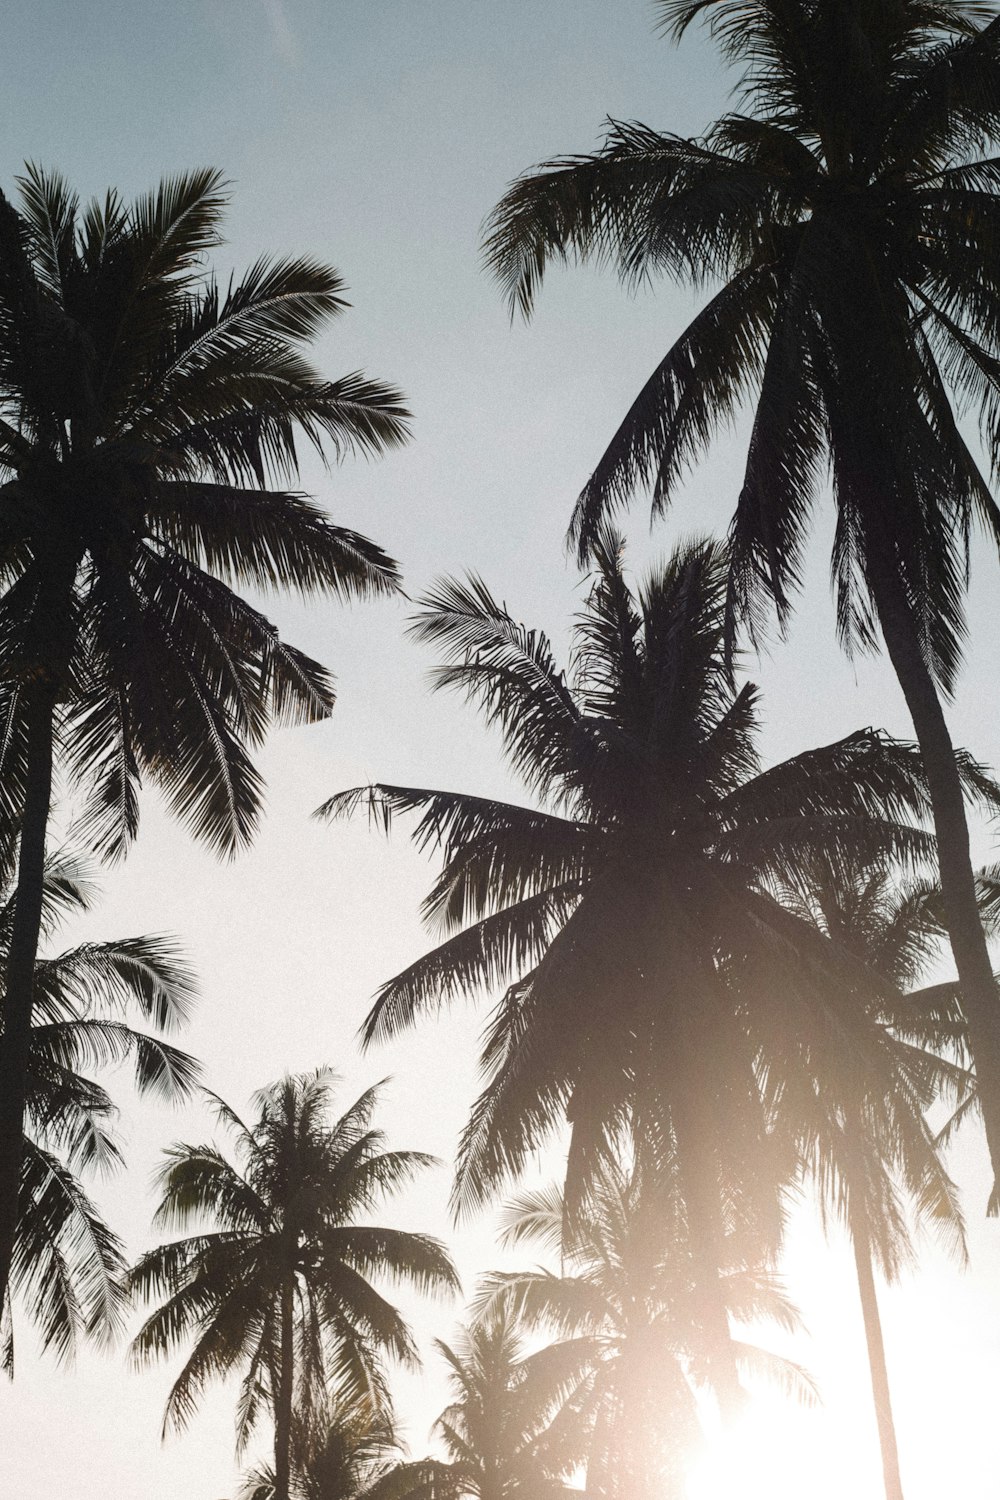 El sol brilla a través de las palmeras